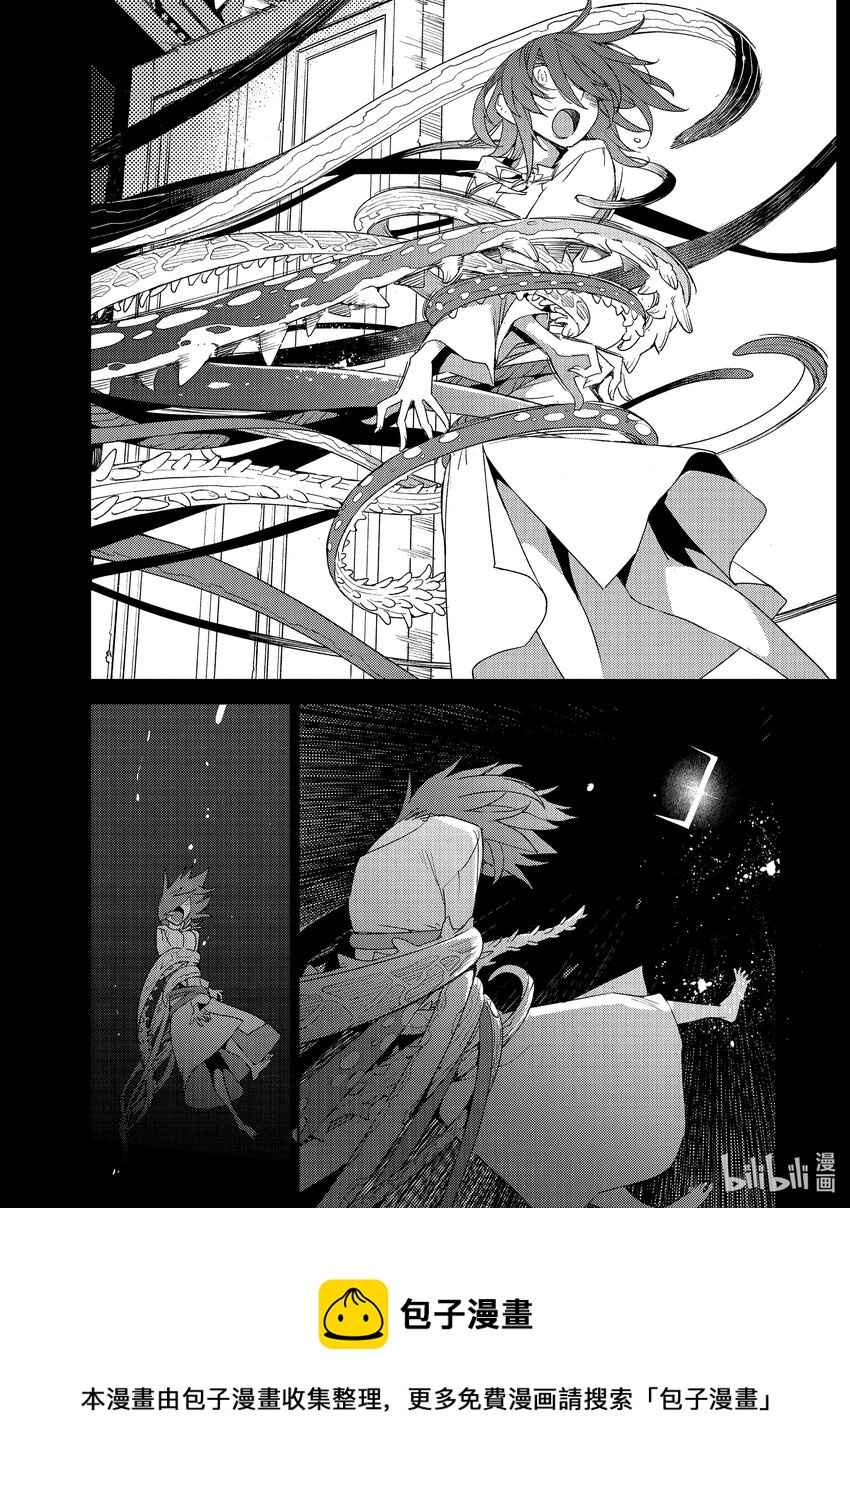 Fate/Grand Order -Epic of Remnant- 亞種特異點Ⅳ 禁忌降臨庭園 塞勒姆 異端塞勒姆 - 034 第三結—9 - 1